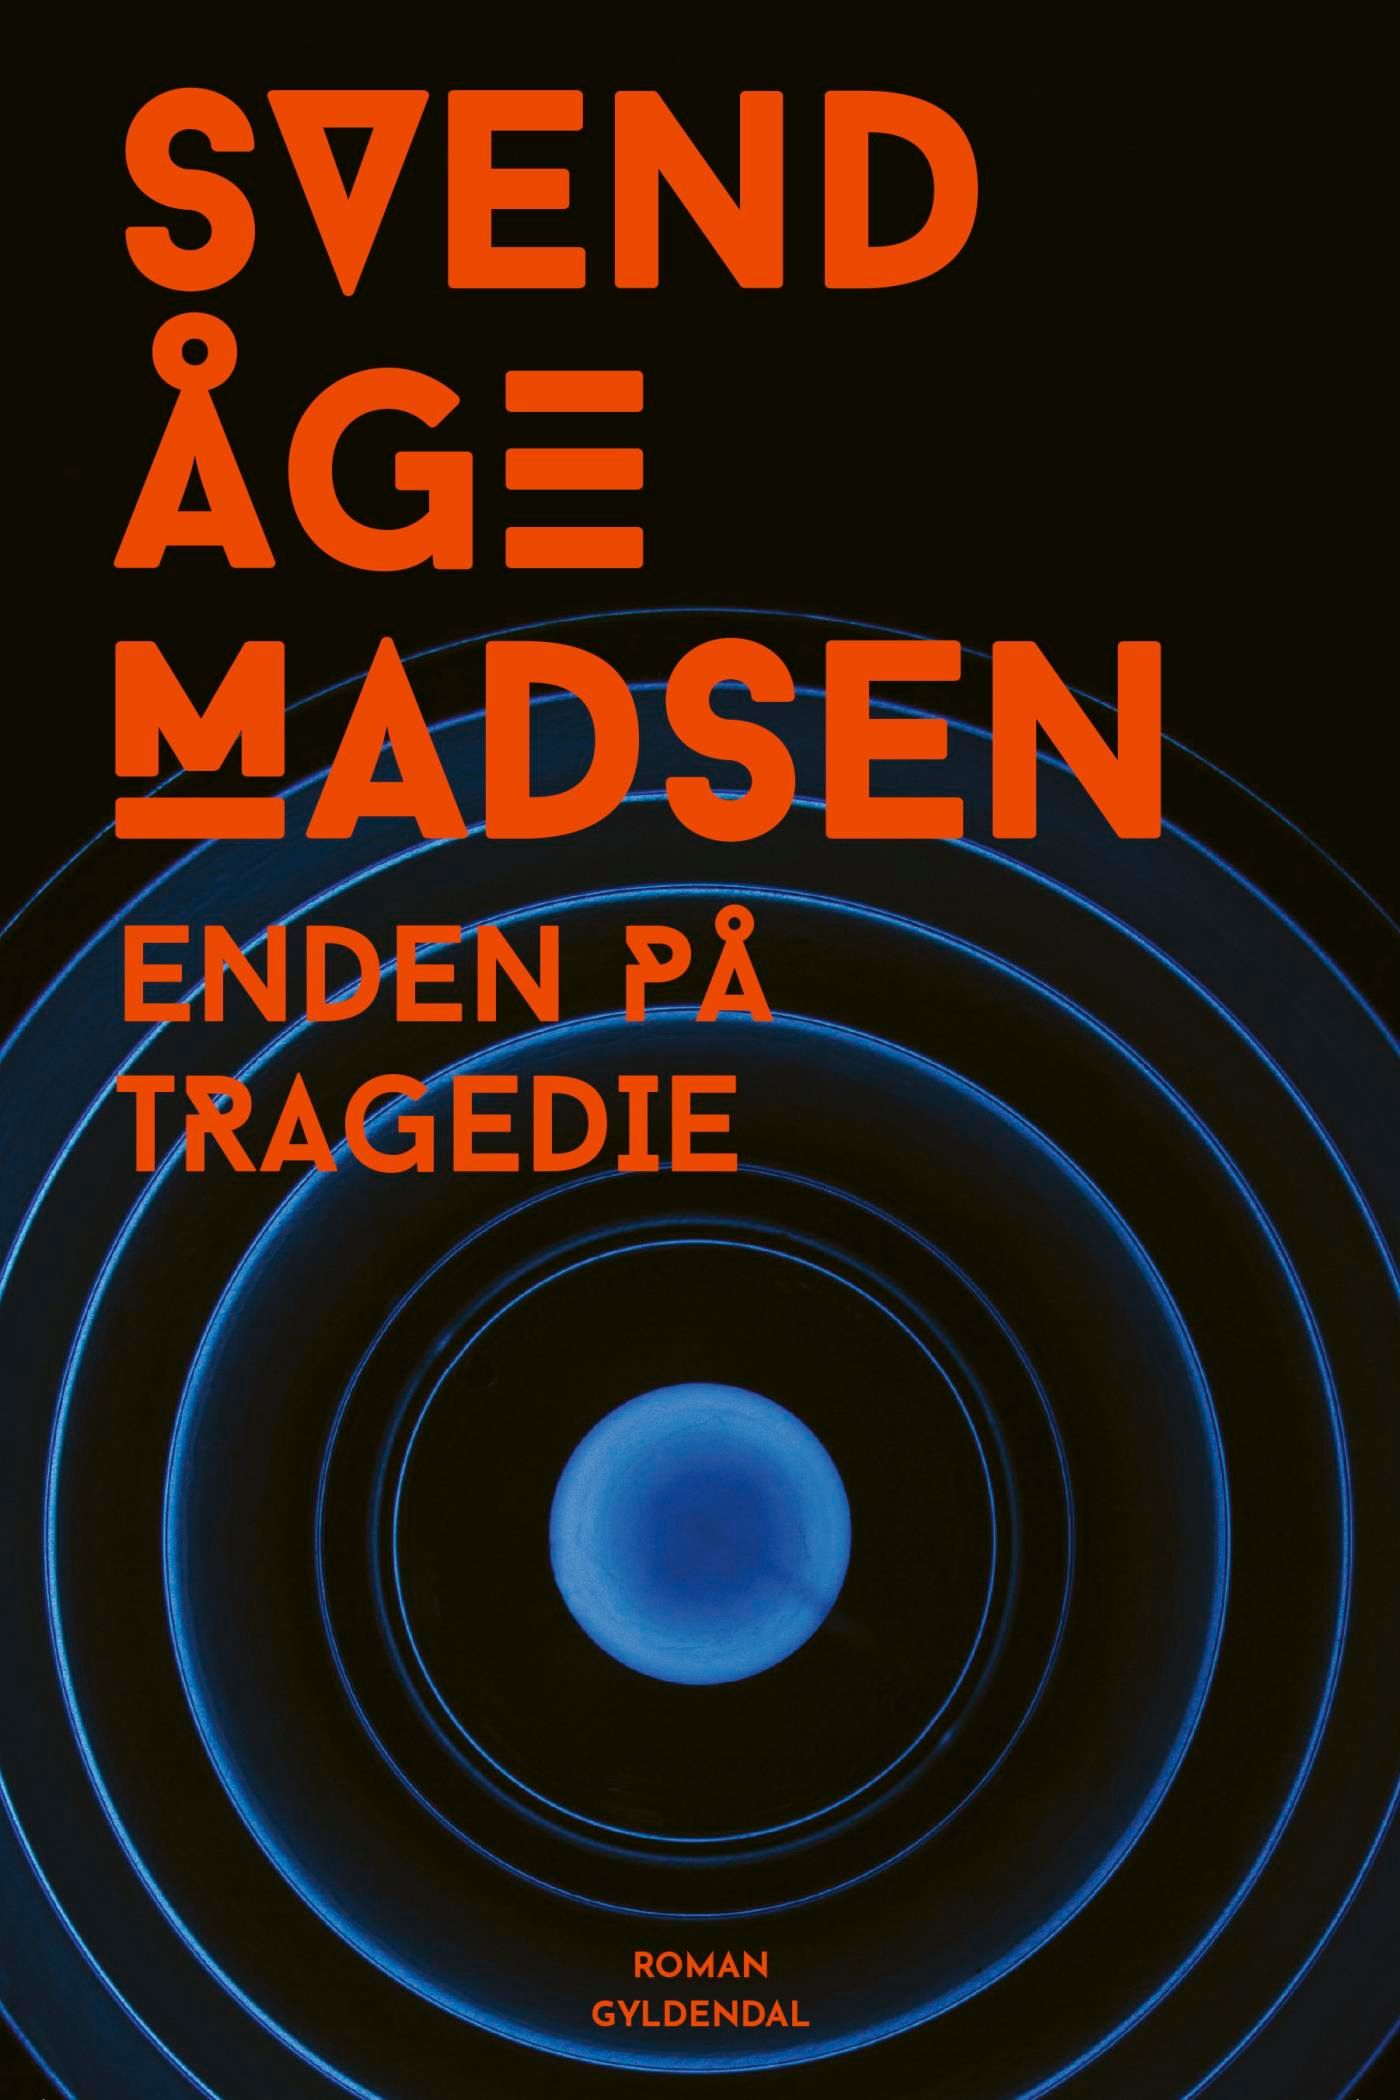 Enden på tragedie, e-bok av Svend Åge Madsen